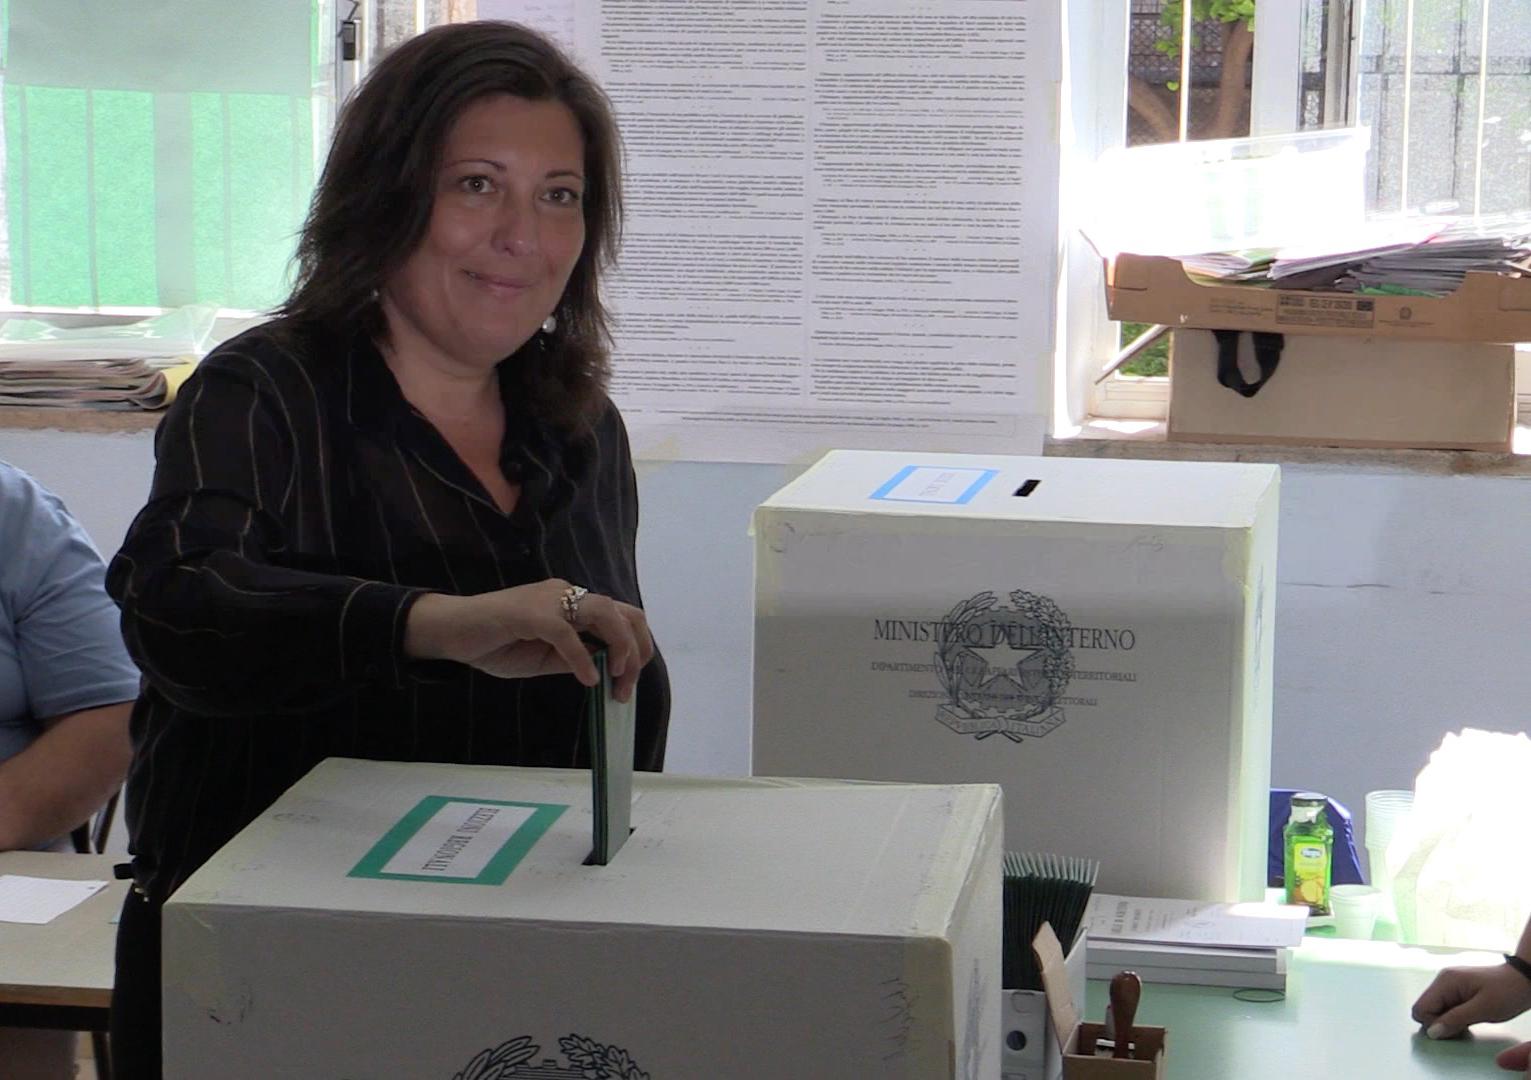 Valeria Ciarambino, candidata presidente del M5S alle elezioni regionali in Campania